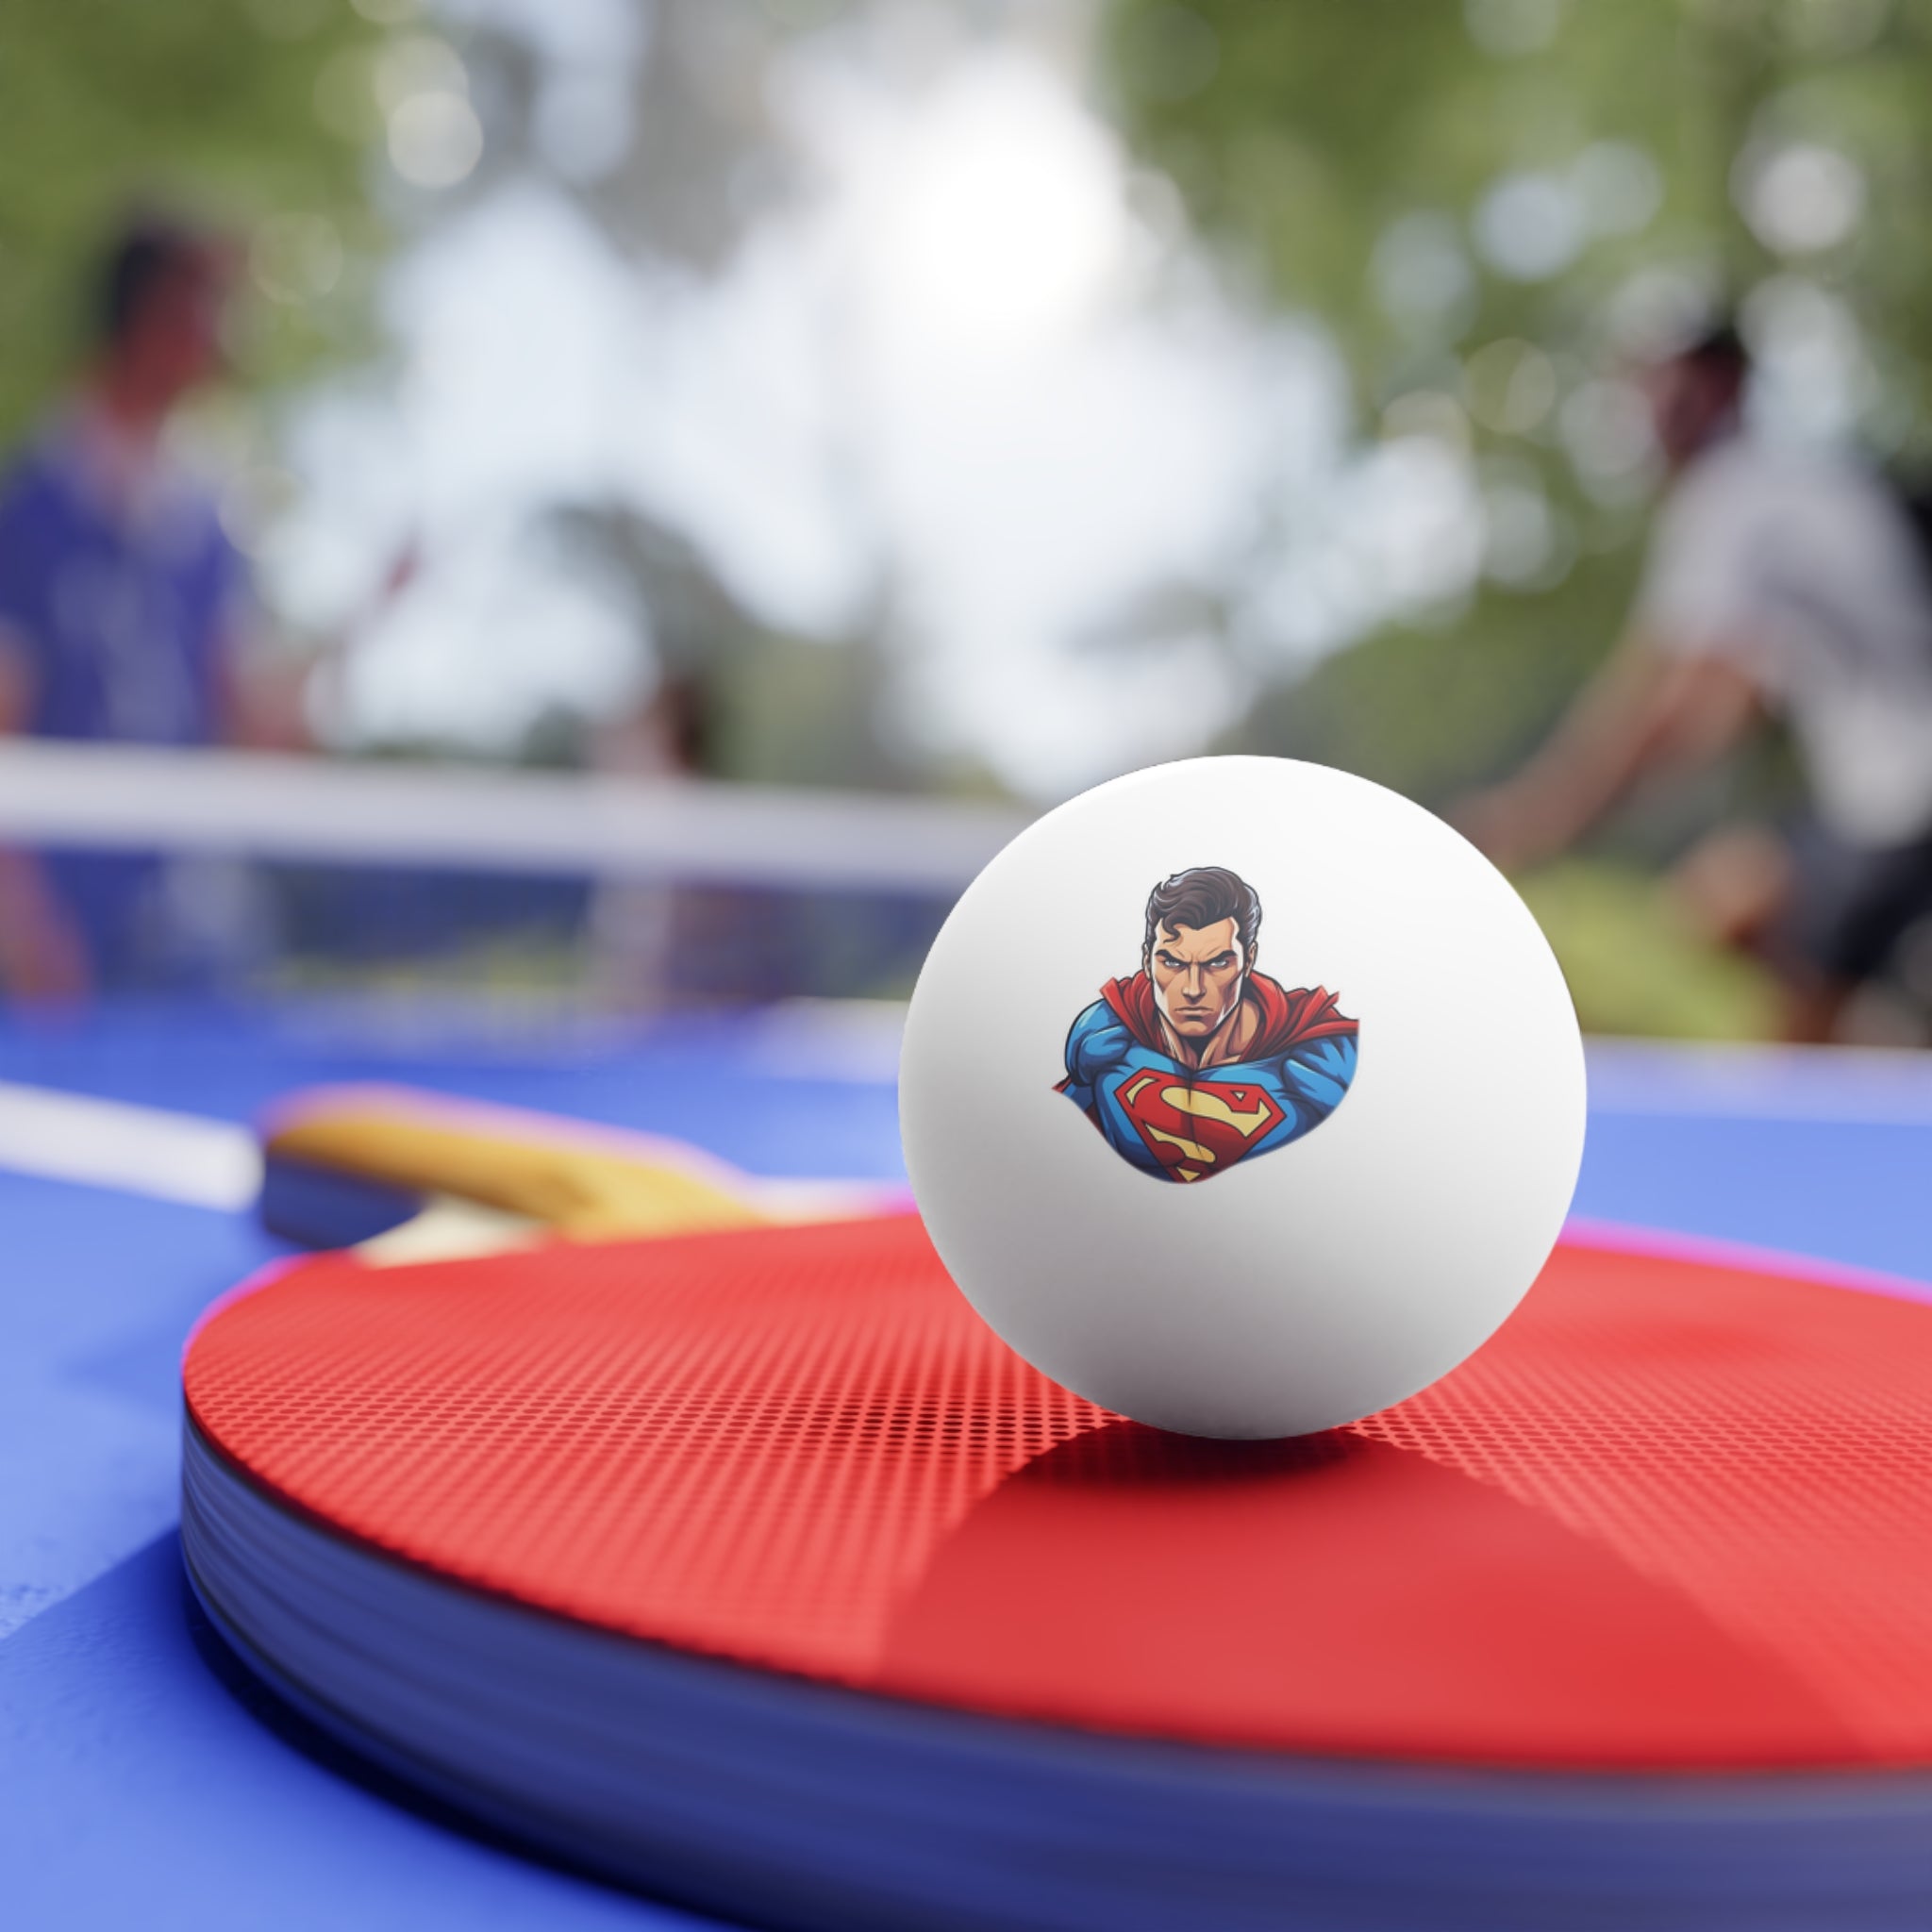 Ping Pong Balls, 6 pcs - Pop Art - Superman